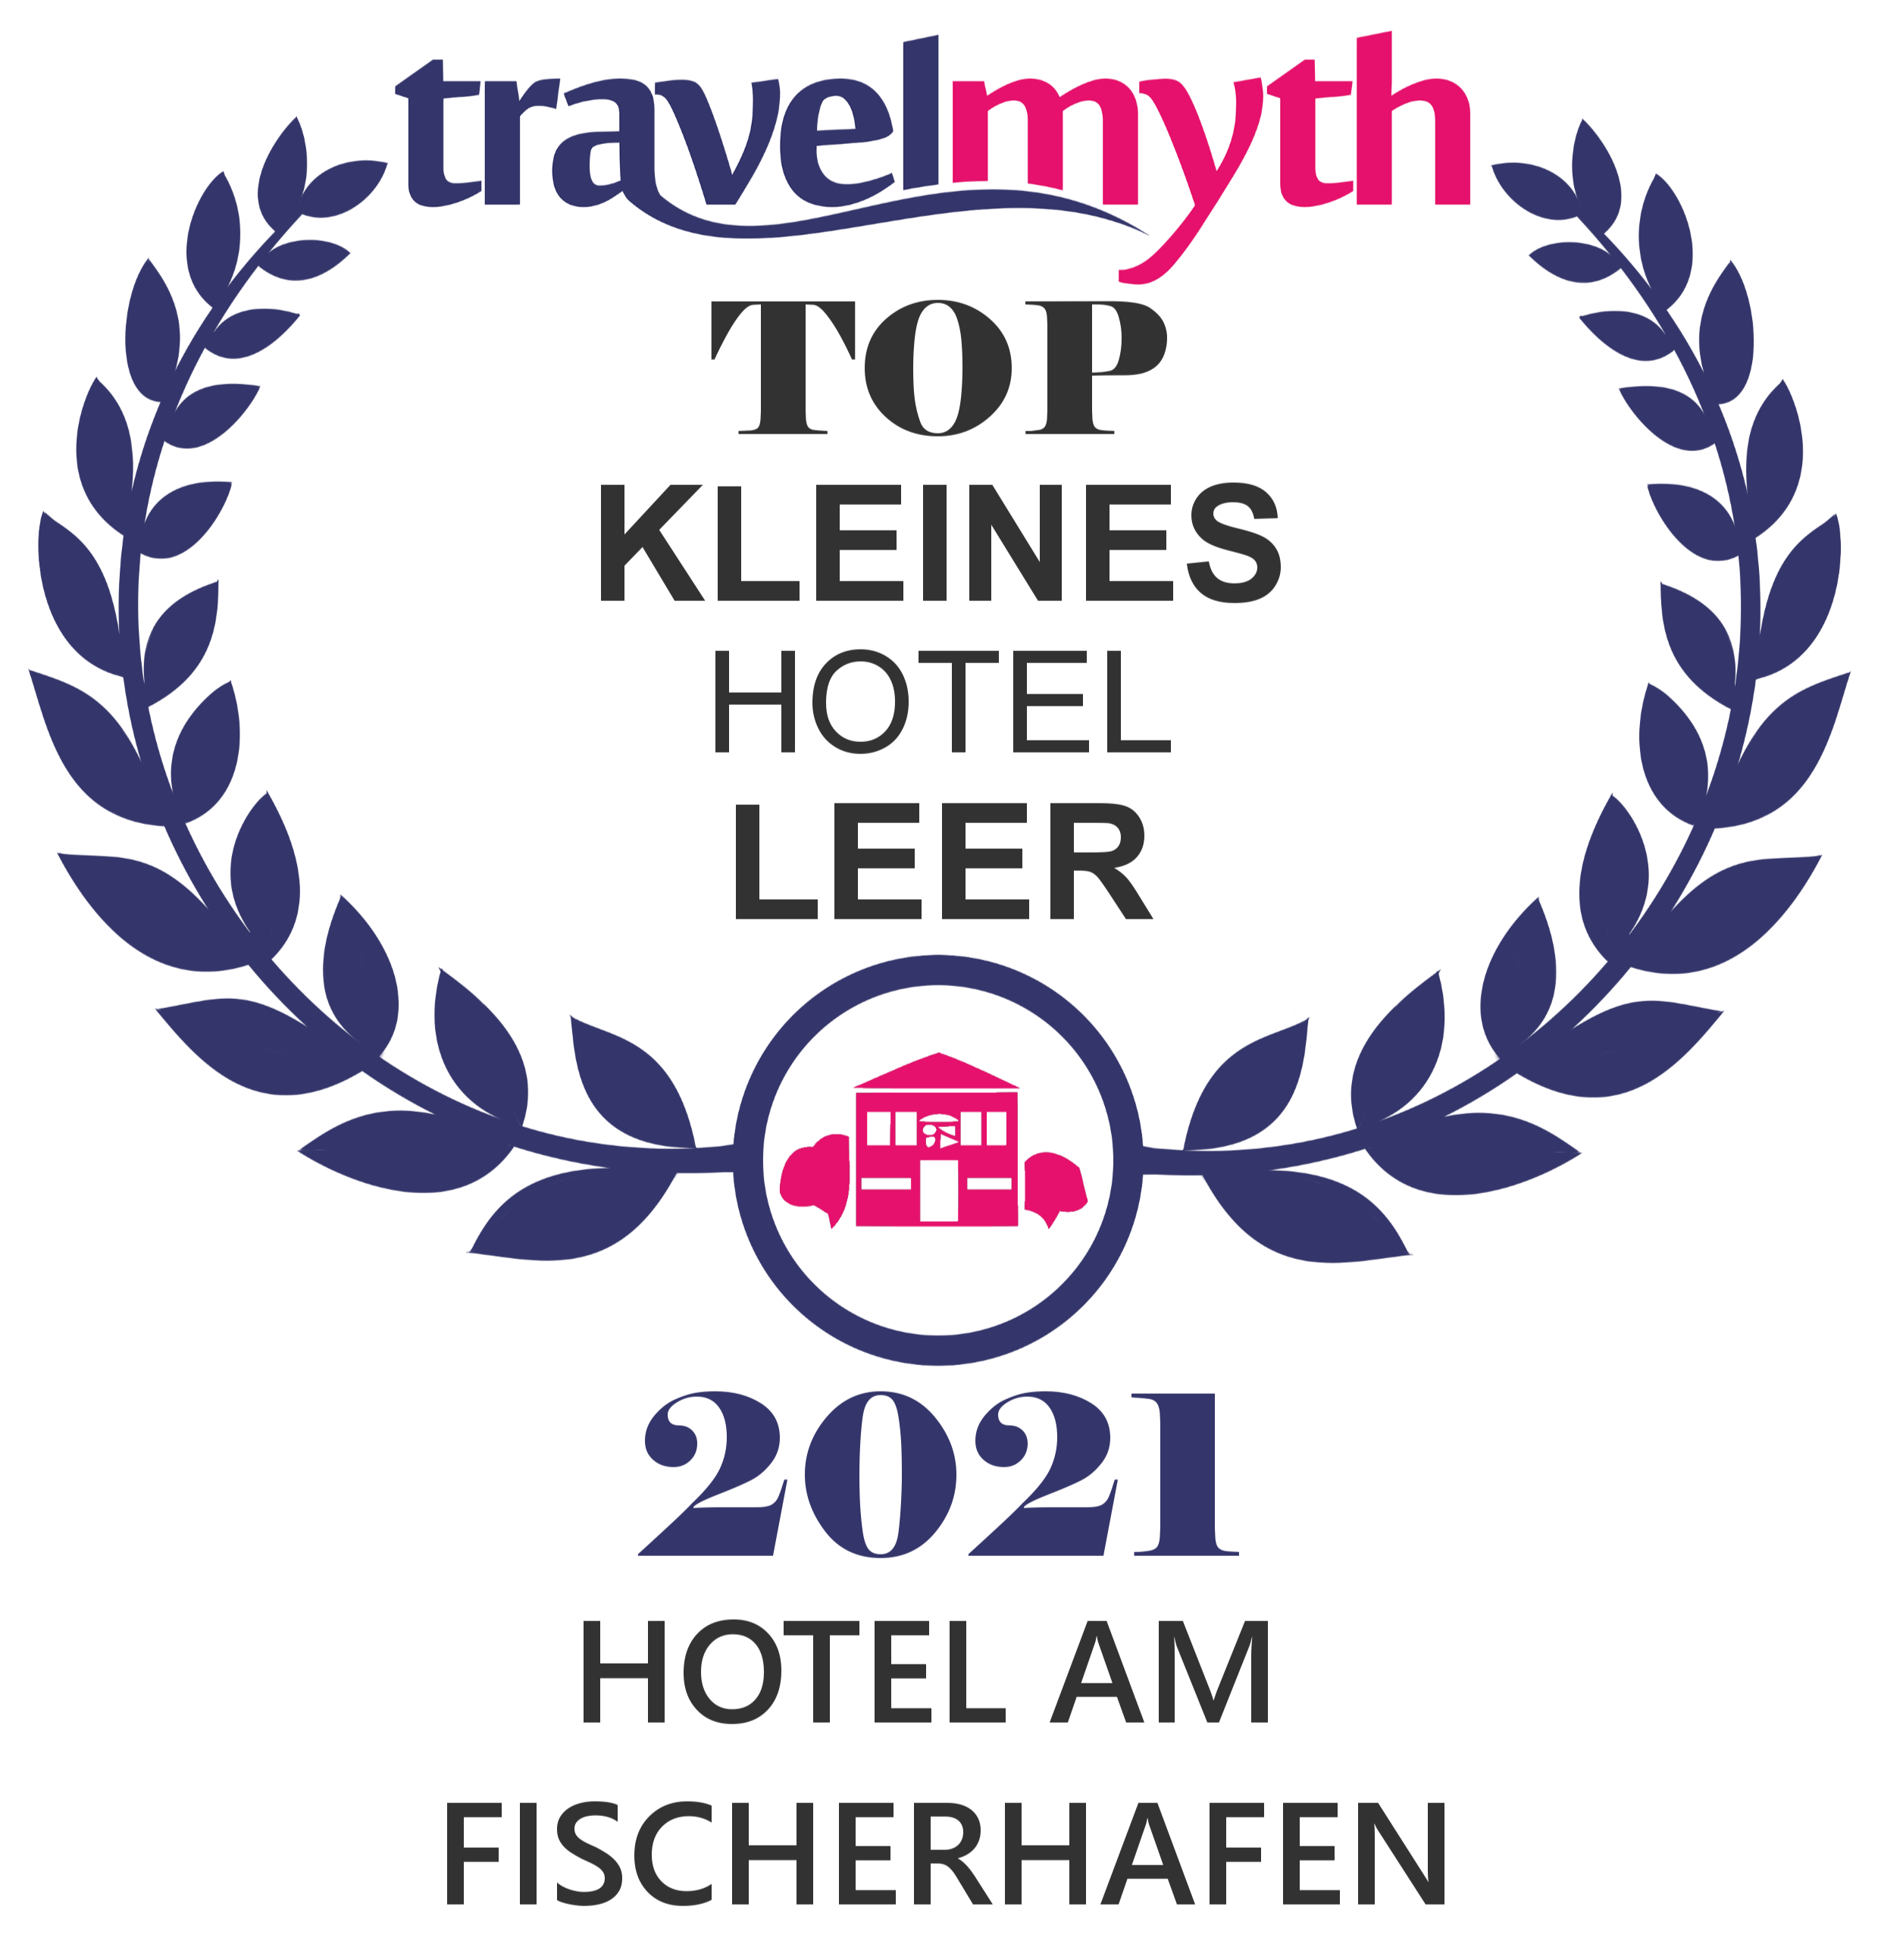 Travelmyth Award für Top kleines Hotel Leer